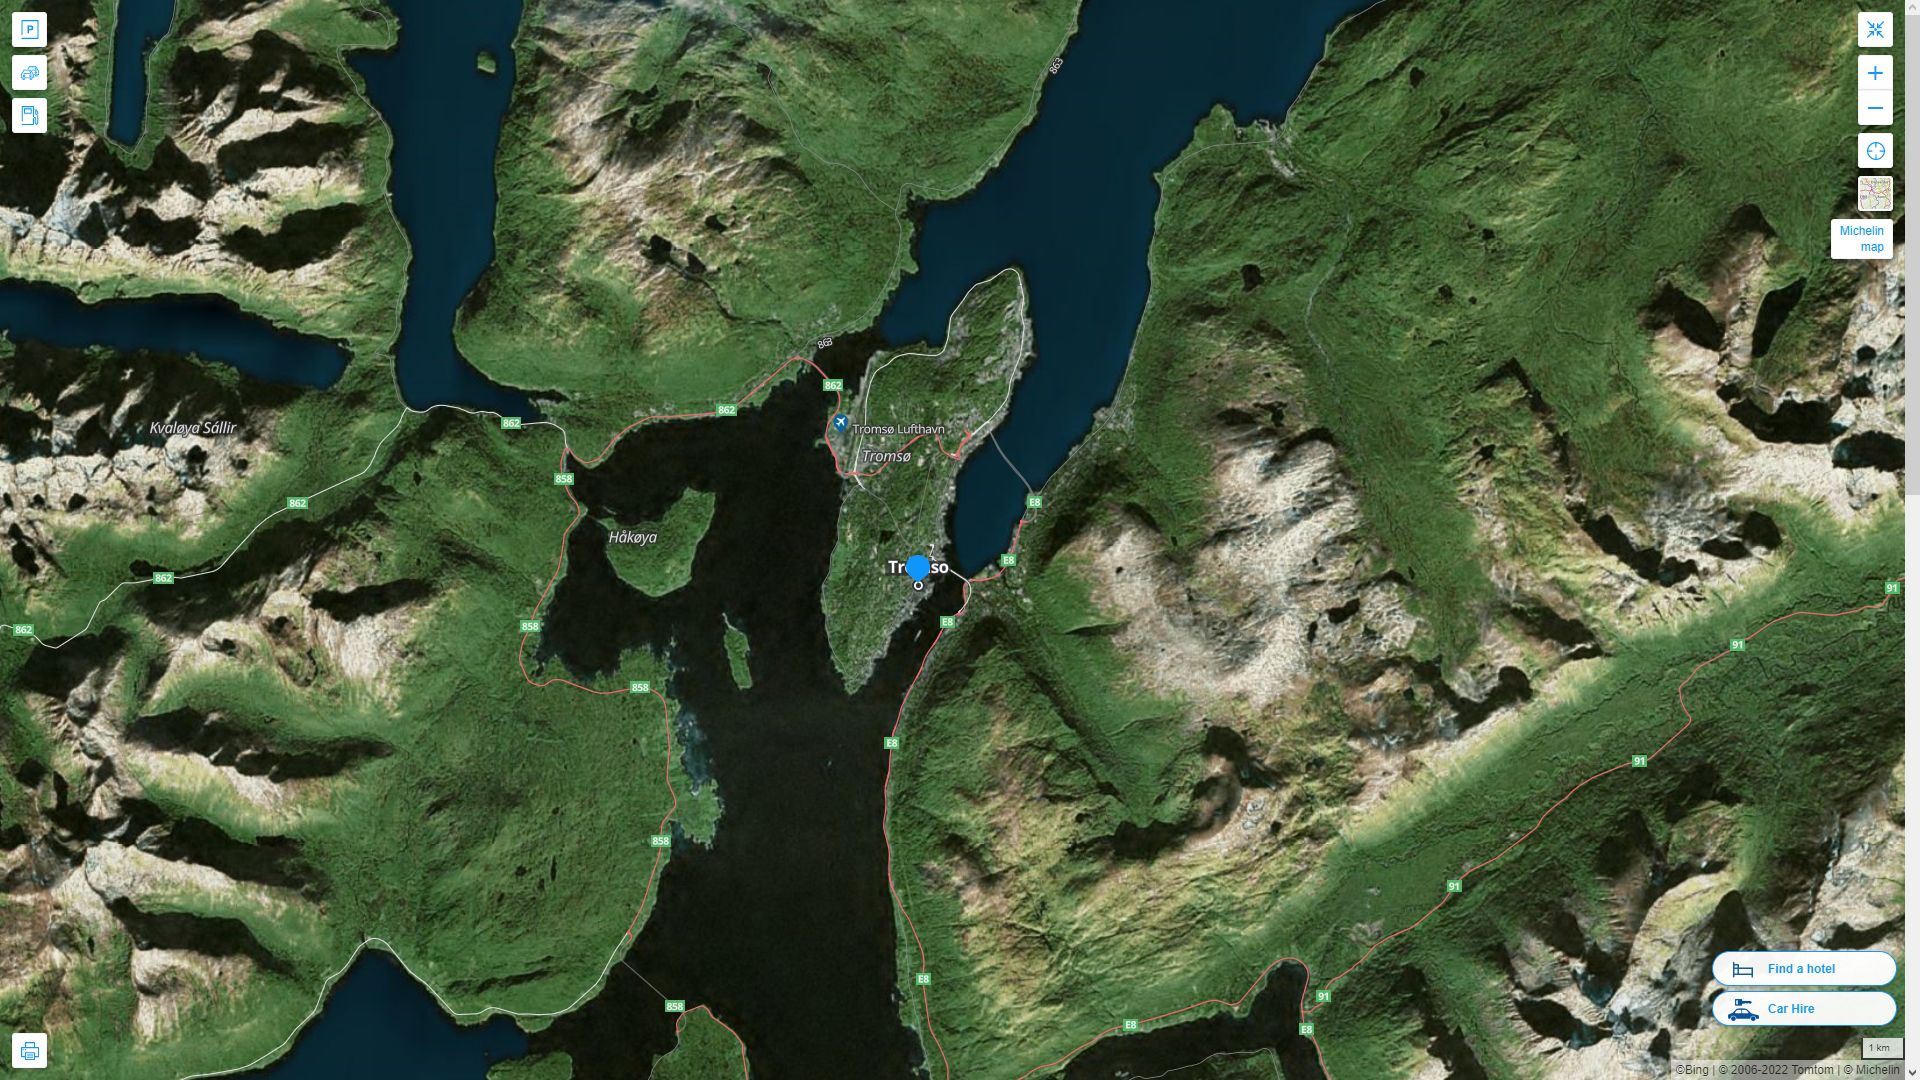 Tromso Norvege Autoroute et carte routiere avec vue satellite